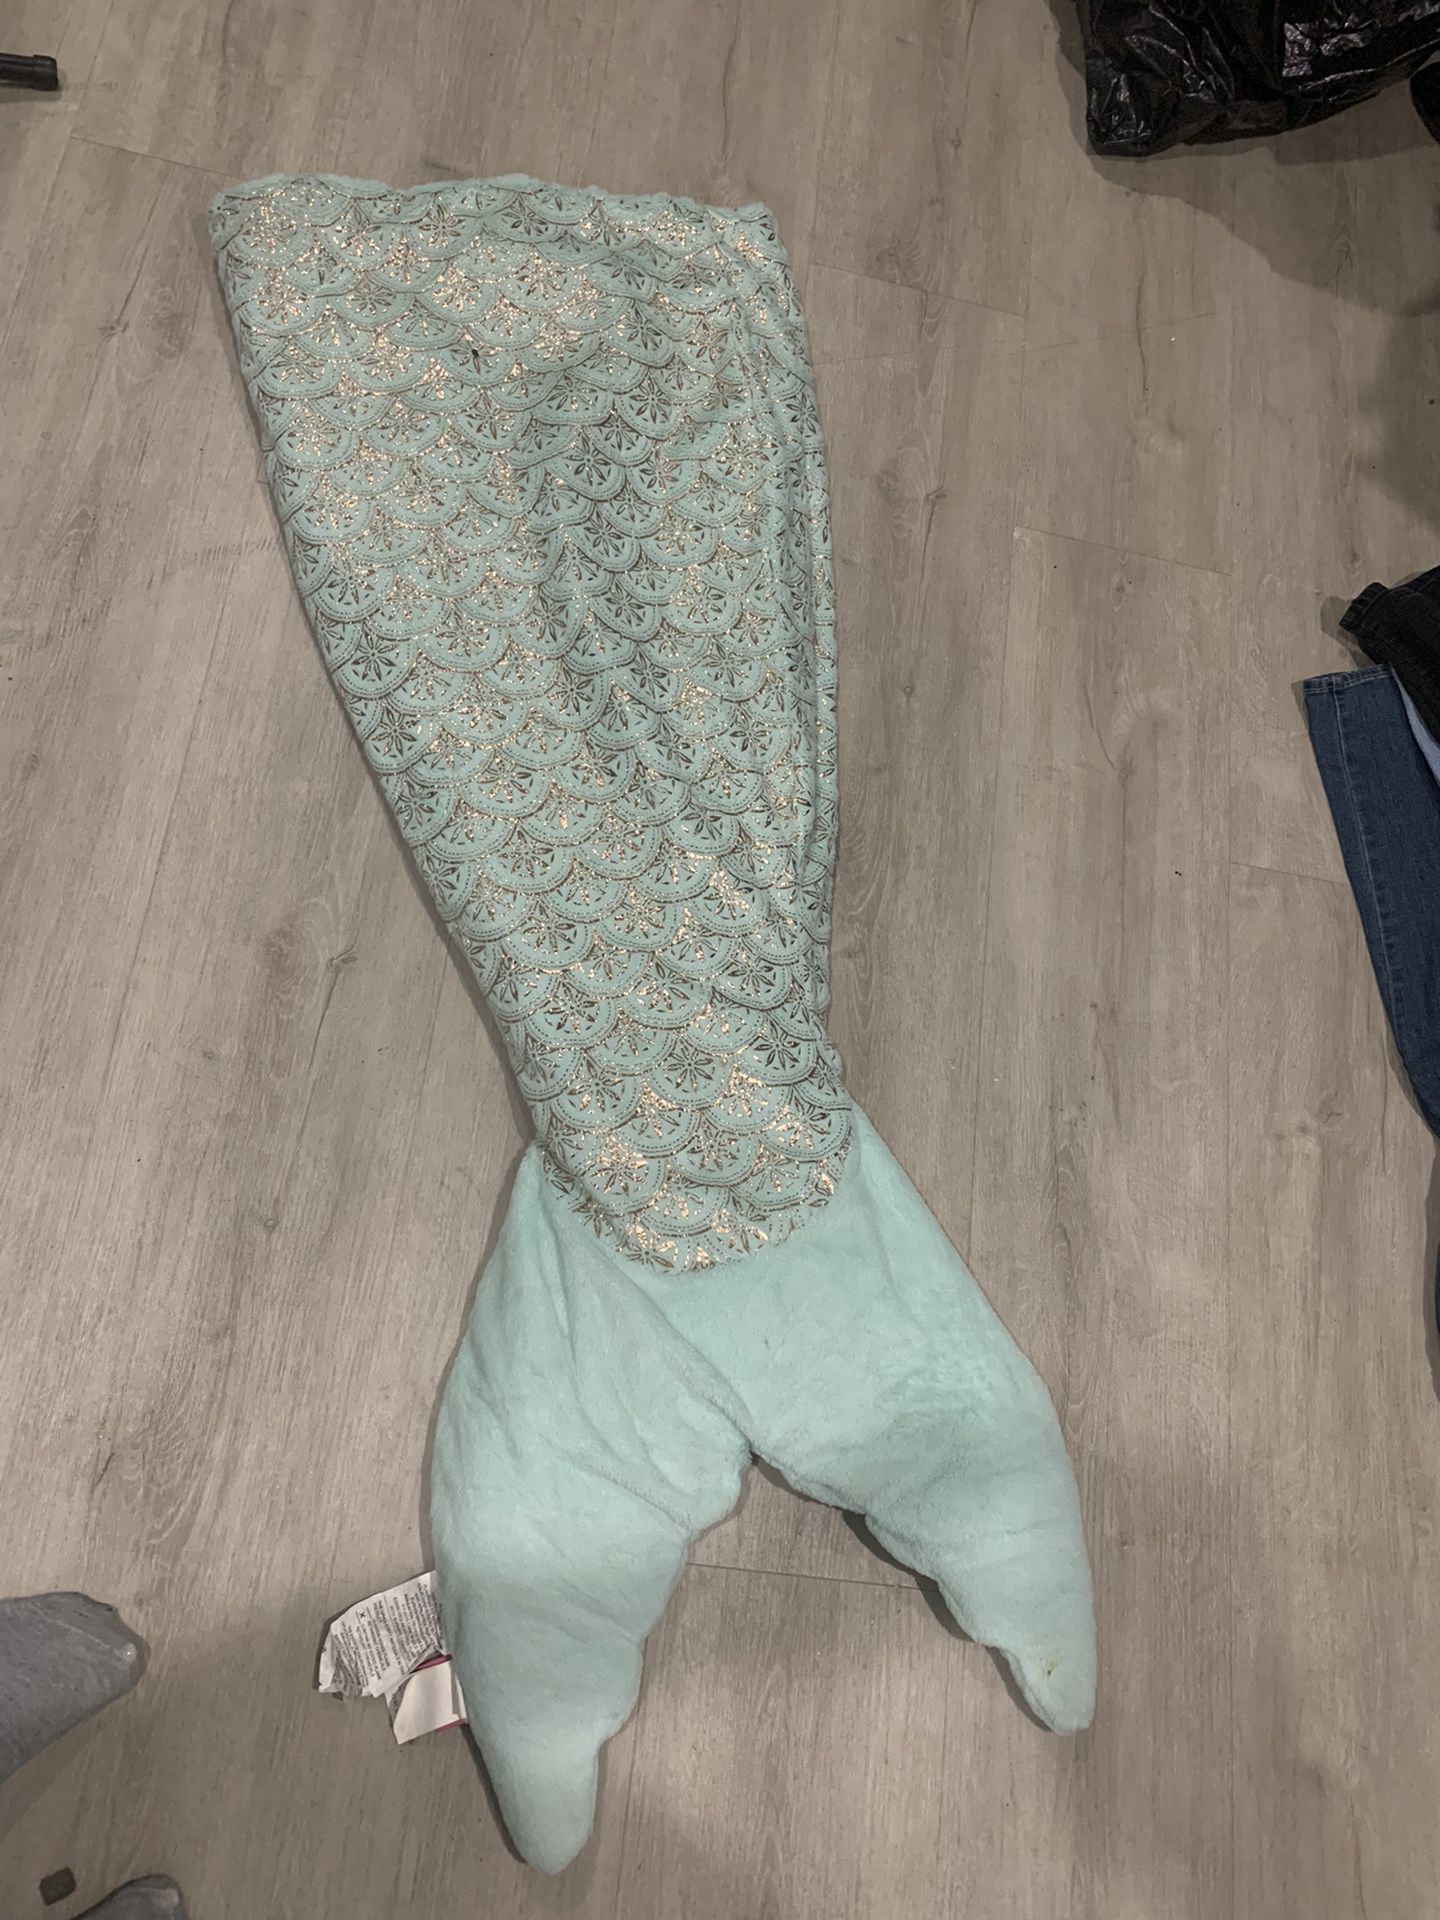 Mermaid sleeping bag